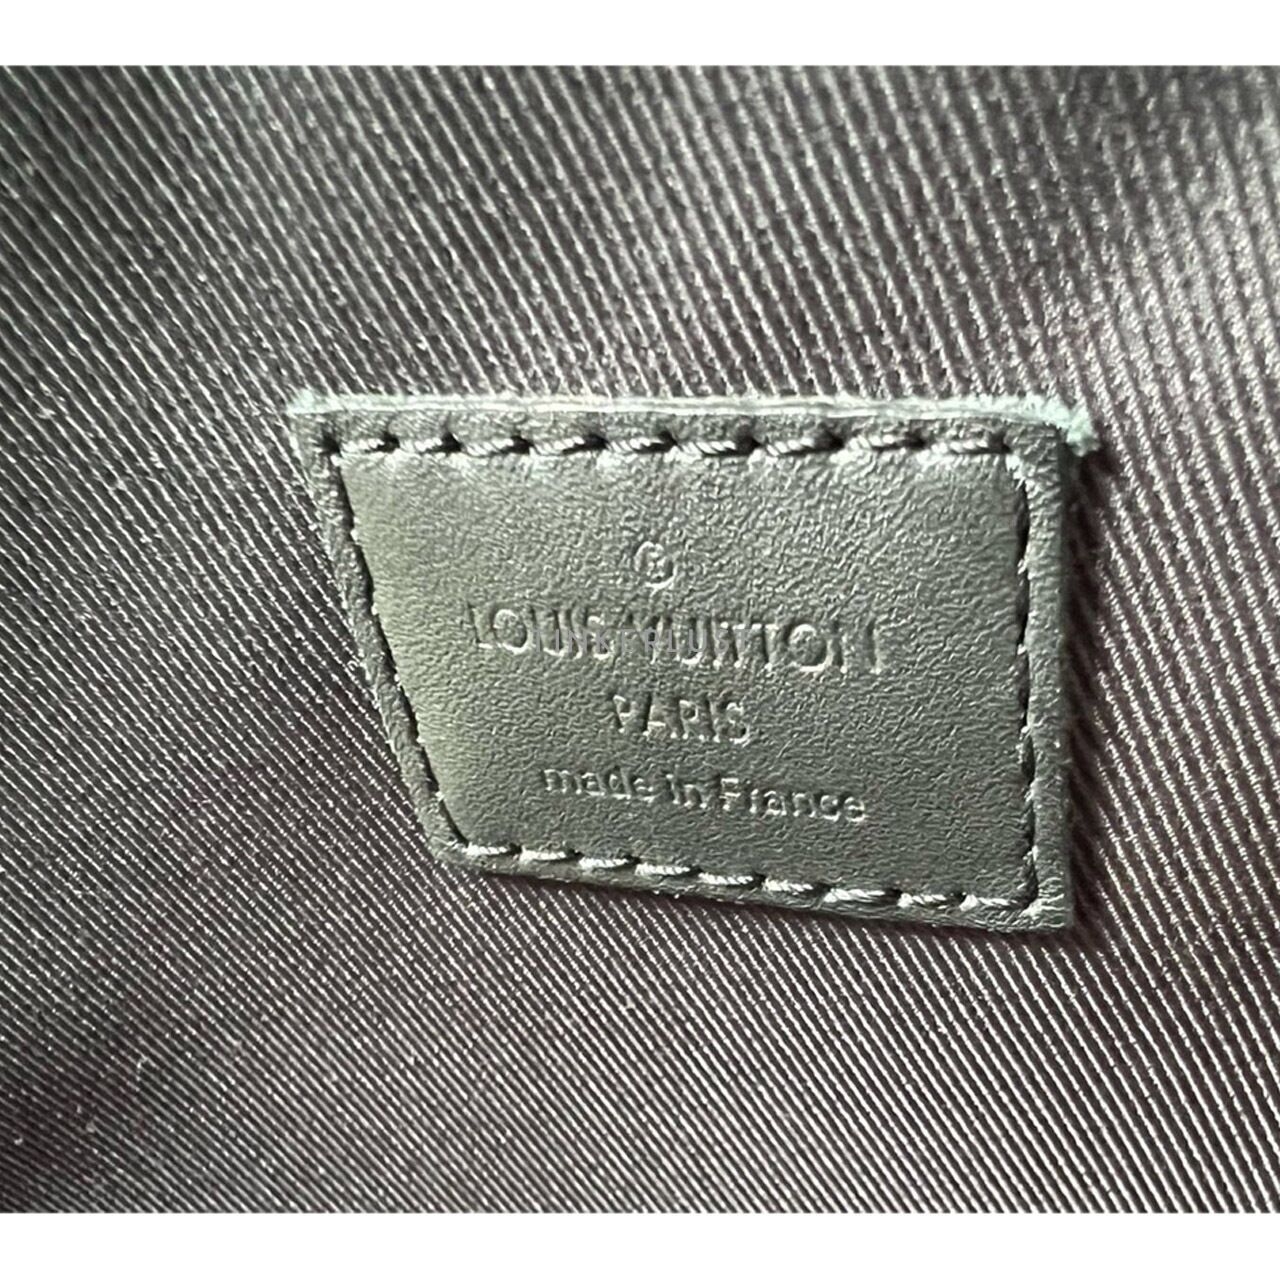 Louis Vuitton Avenue Black Damier Graphite 2019 Sling Bag